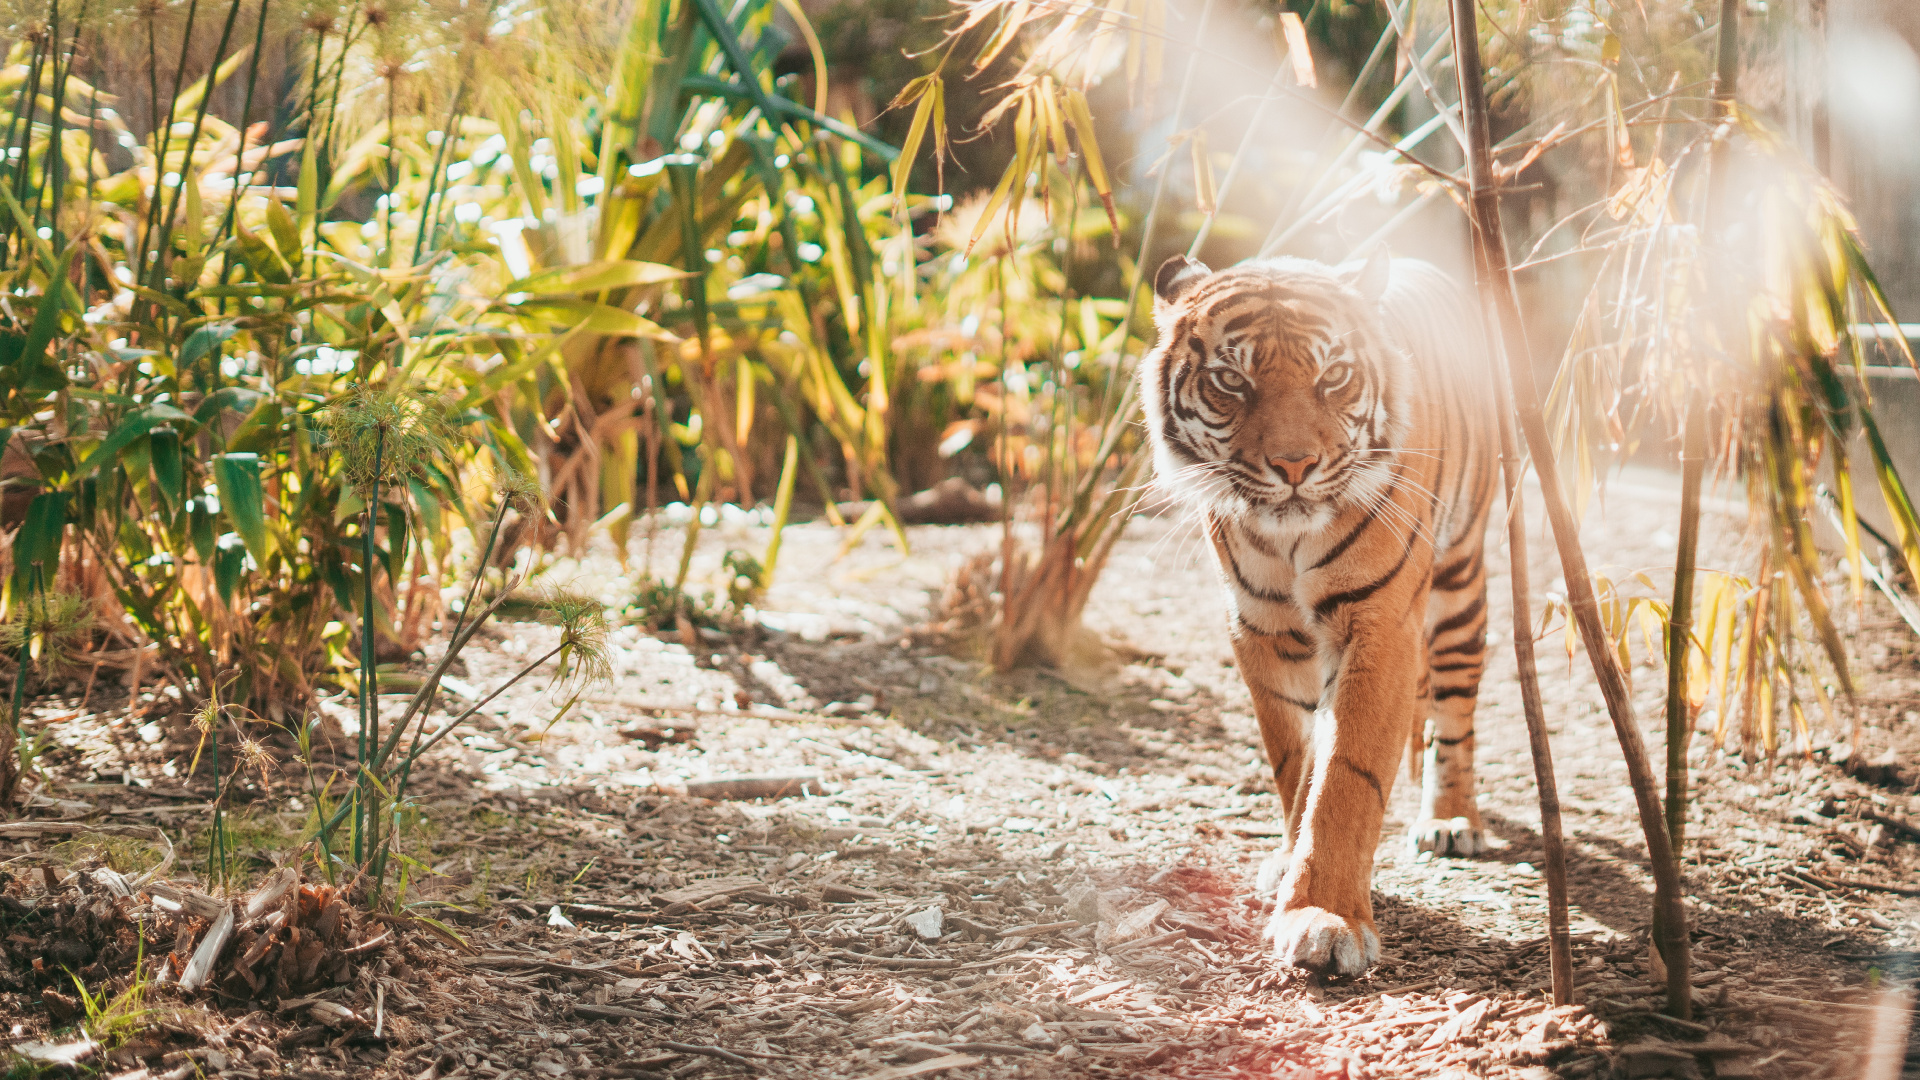 老虎, 孟加拉虎, 野生动物, 陆地动物, 猫科 壁纸 1920x1080 允许